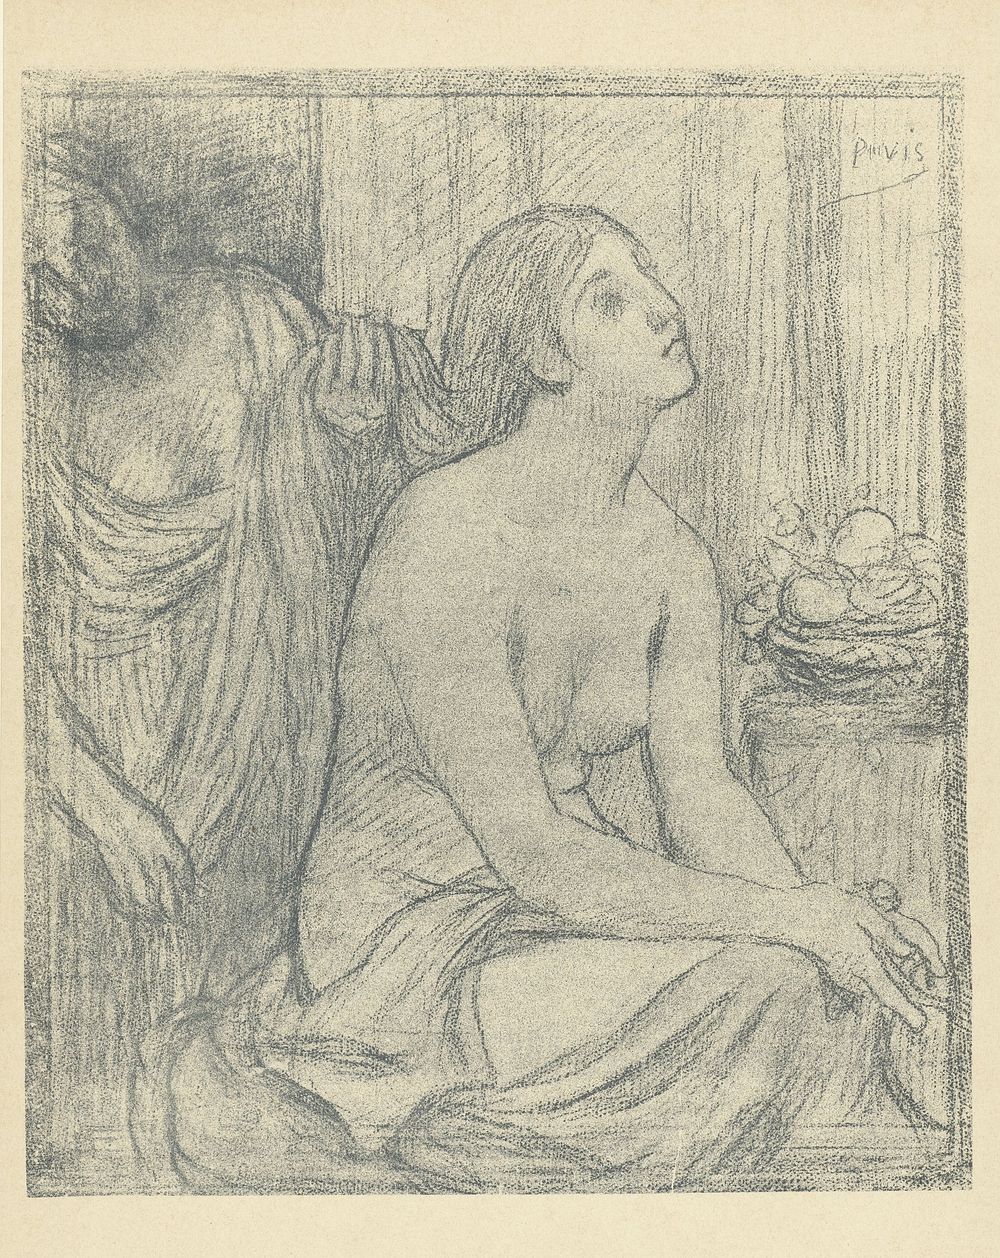 Vrouw kamt haar van halfnaakte zittende vrouw (1895) by Pierre Cécile Puvis de Chavannes, L Epreuve and P Lemaire